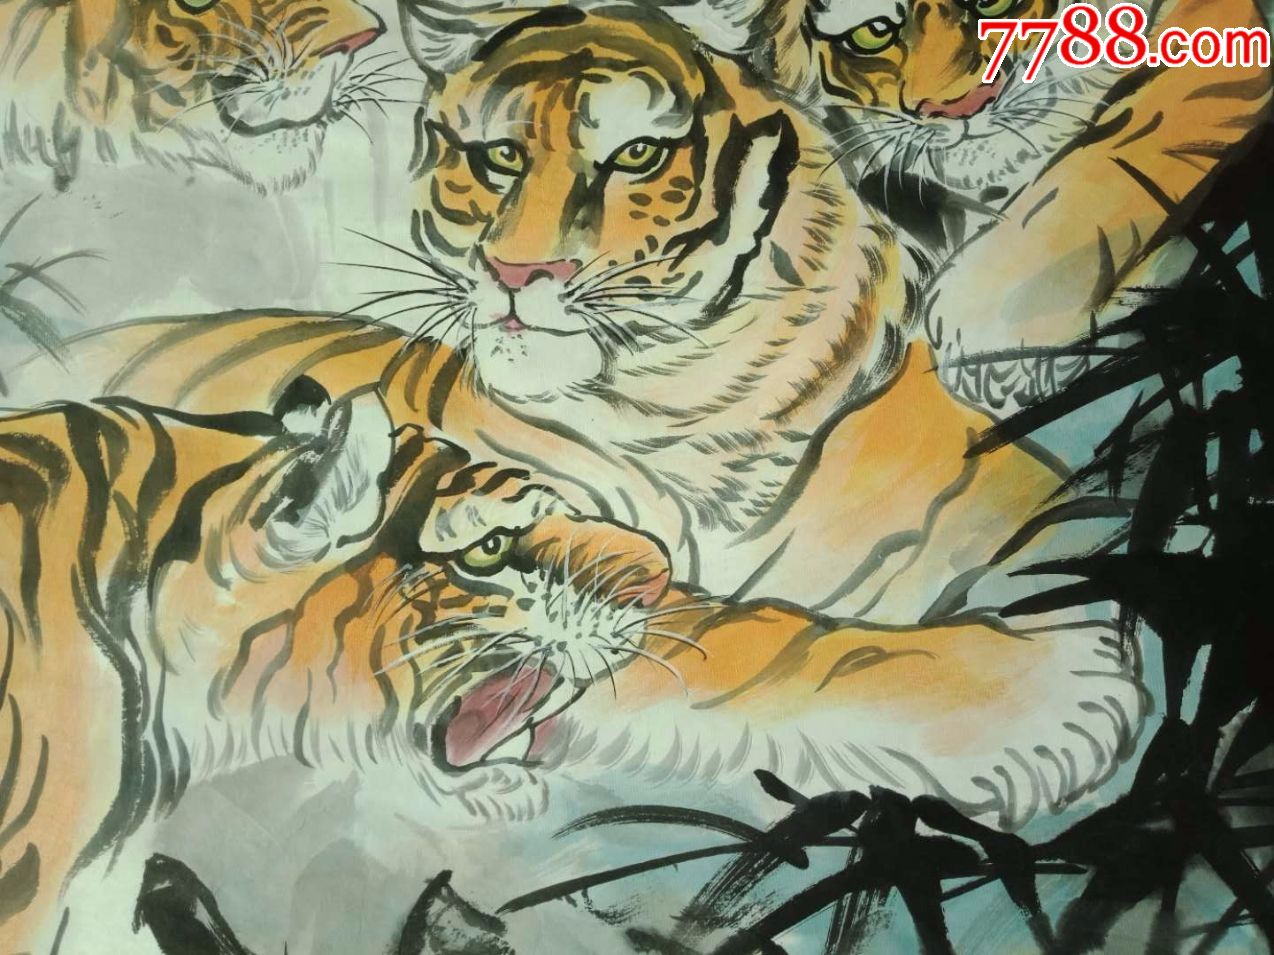 纯手绘画,大尺寸,动物画国画,猛兽图,五只老虎,五福临门图